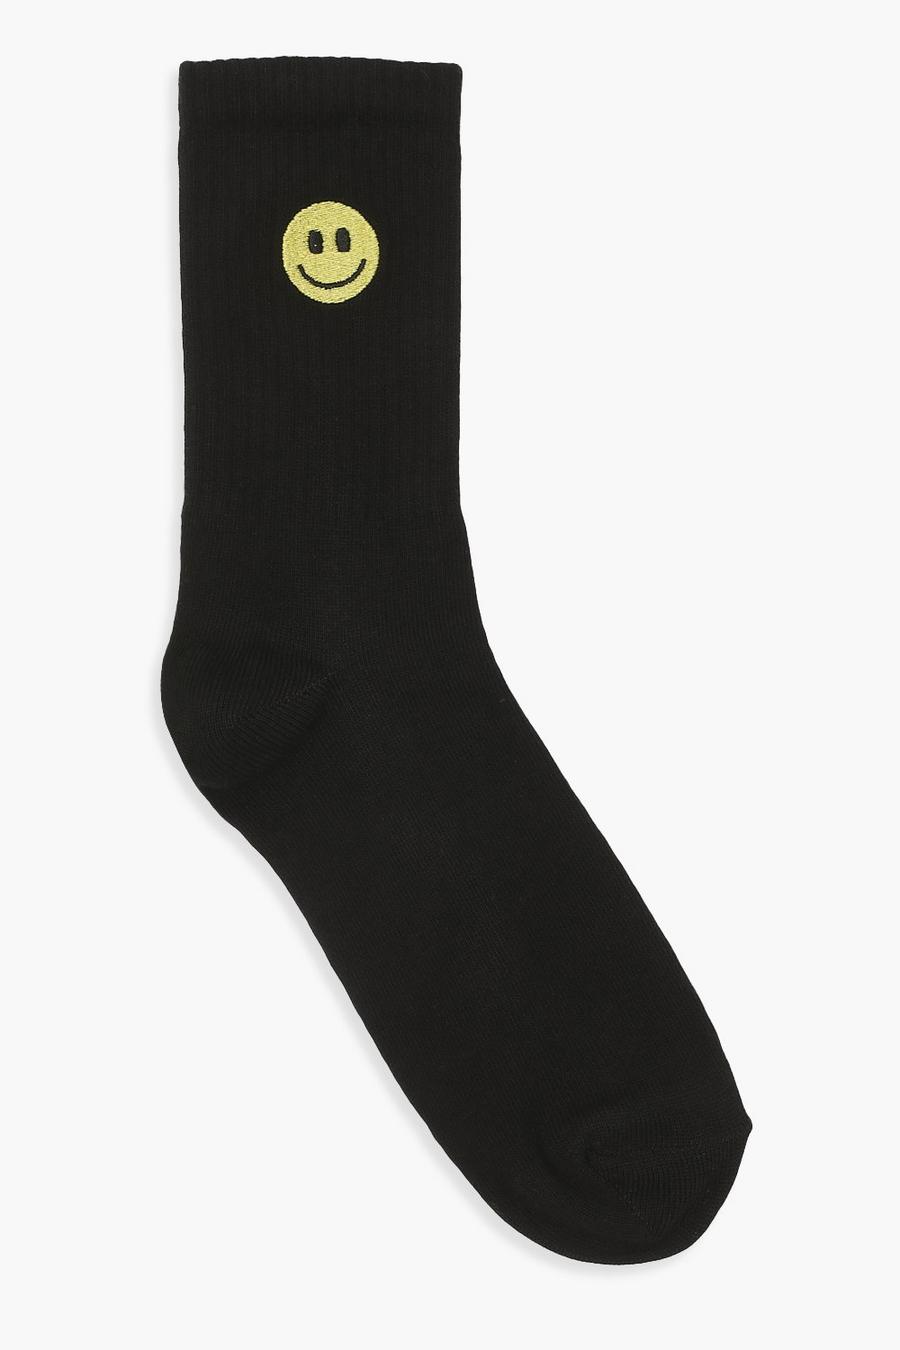 Chaussettes de sport noires smiley, Black image number 1